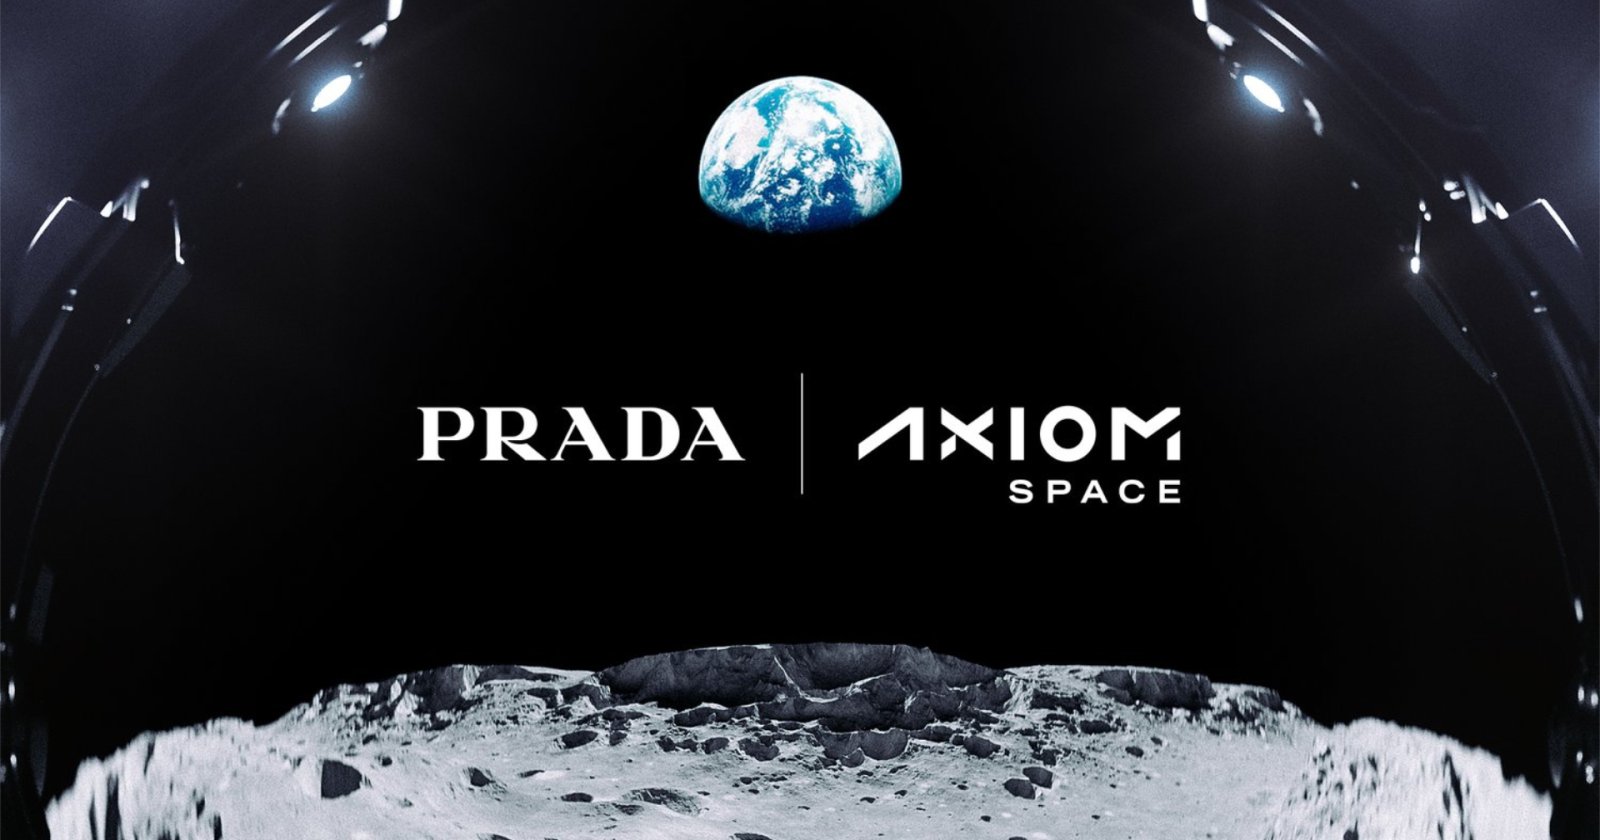 สู่จักรวาลของจริง! Prada ร่วมออกแบบชุดอวกาศรุ่นใหม่ของ NASA